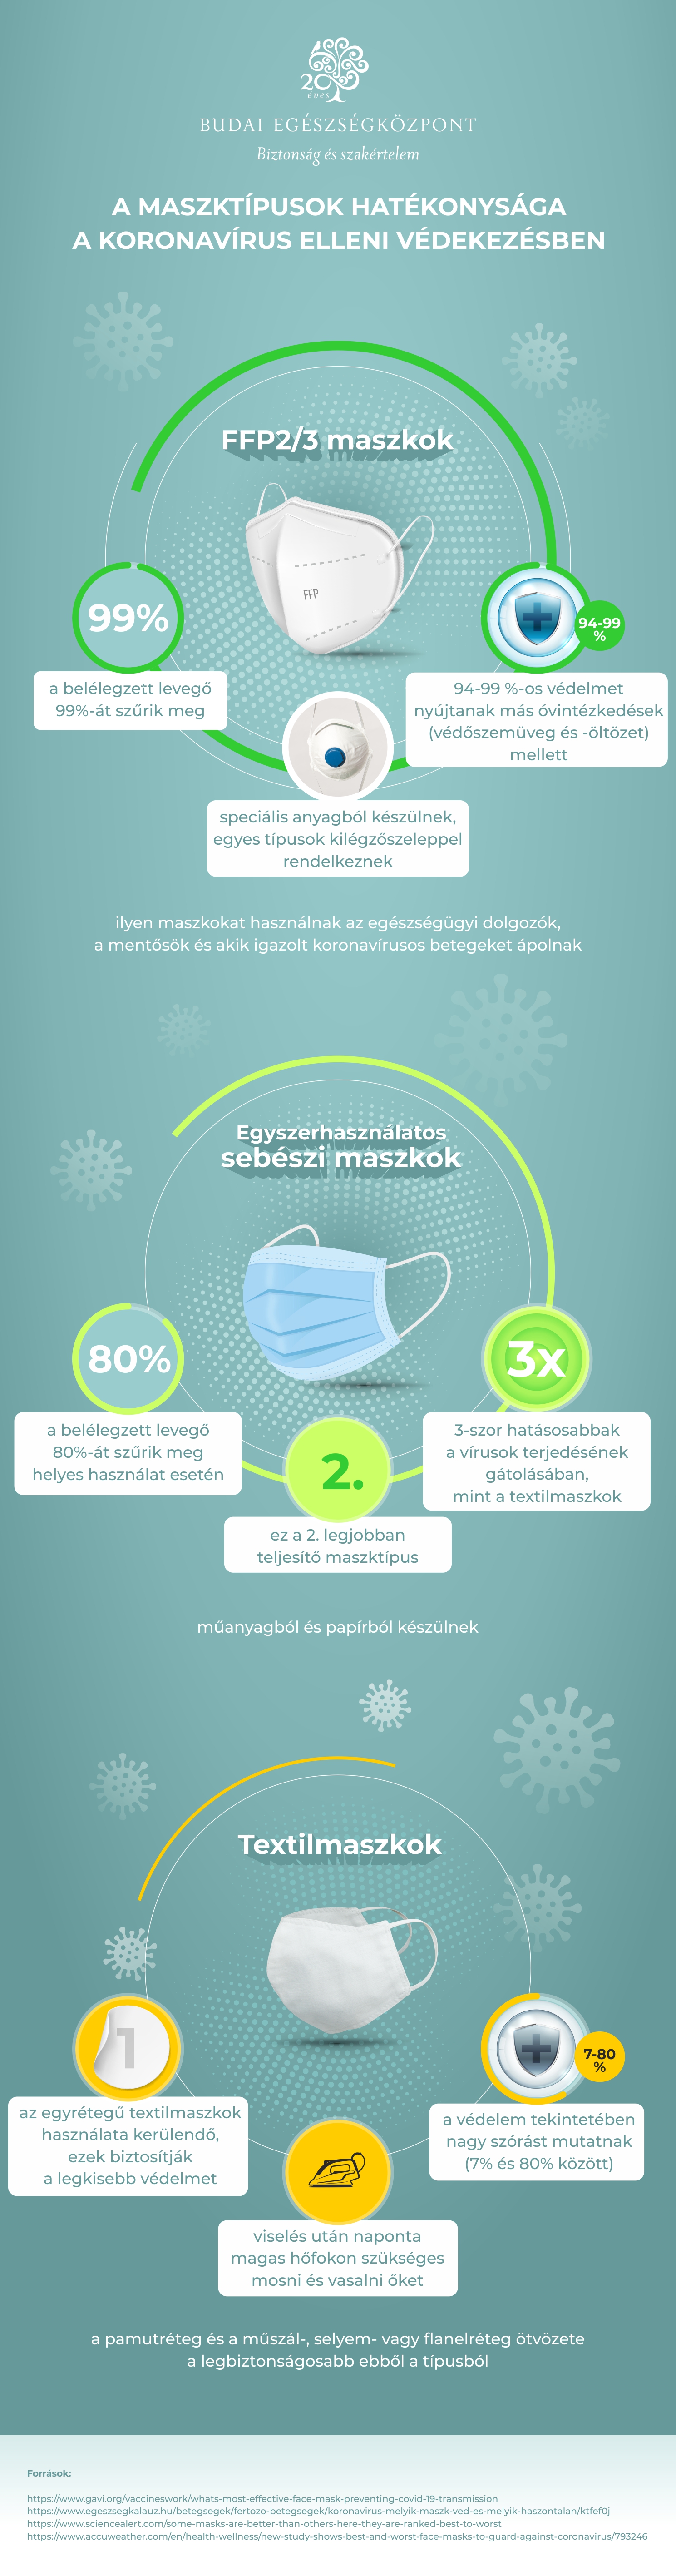 Infografika a maszktípusok hatékonyságáról